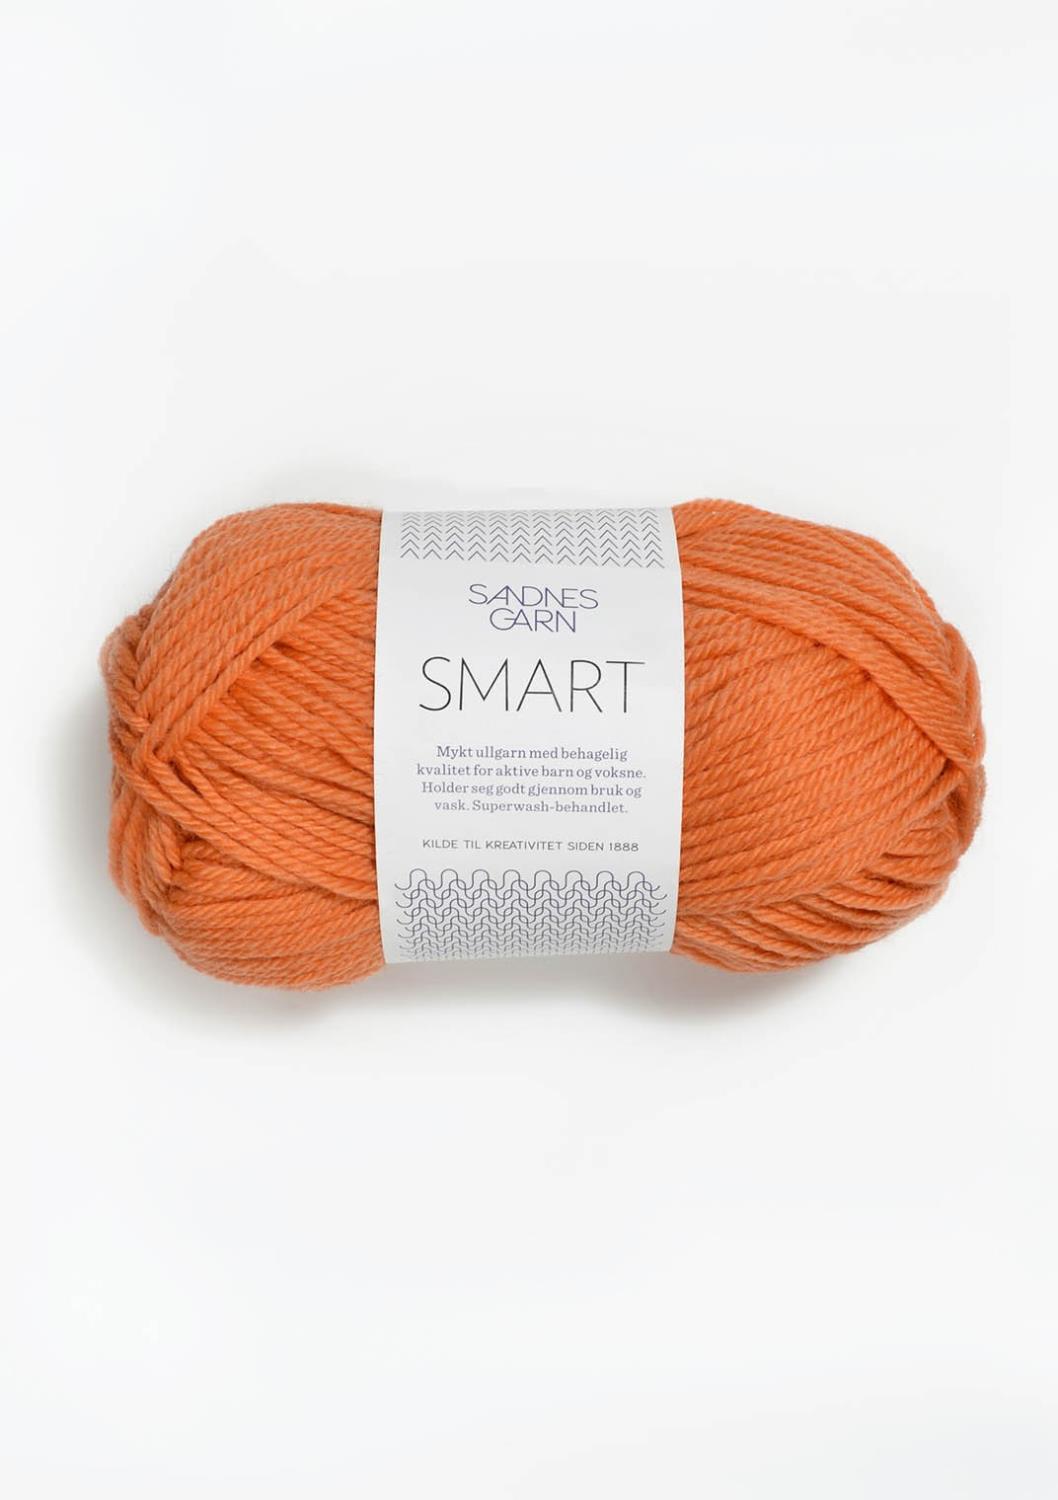 Smart Sandnes 3316 - Oransje